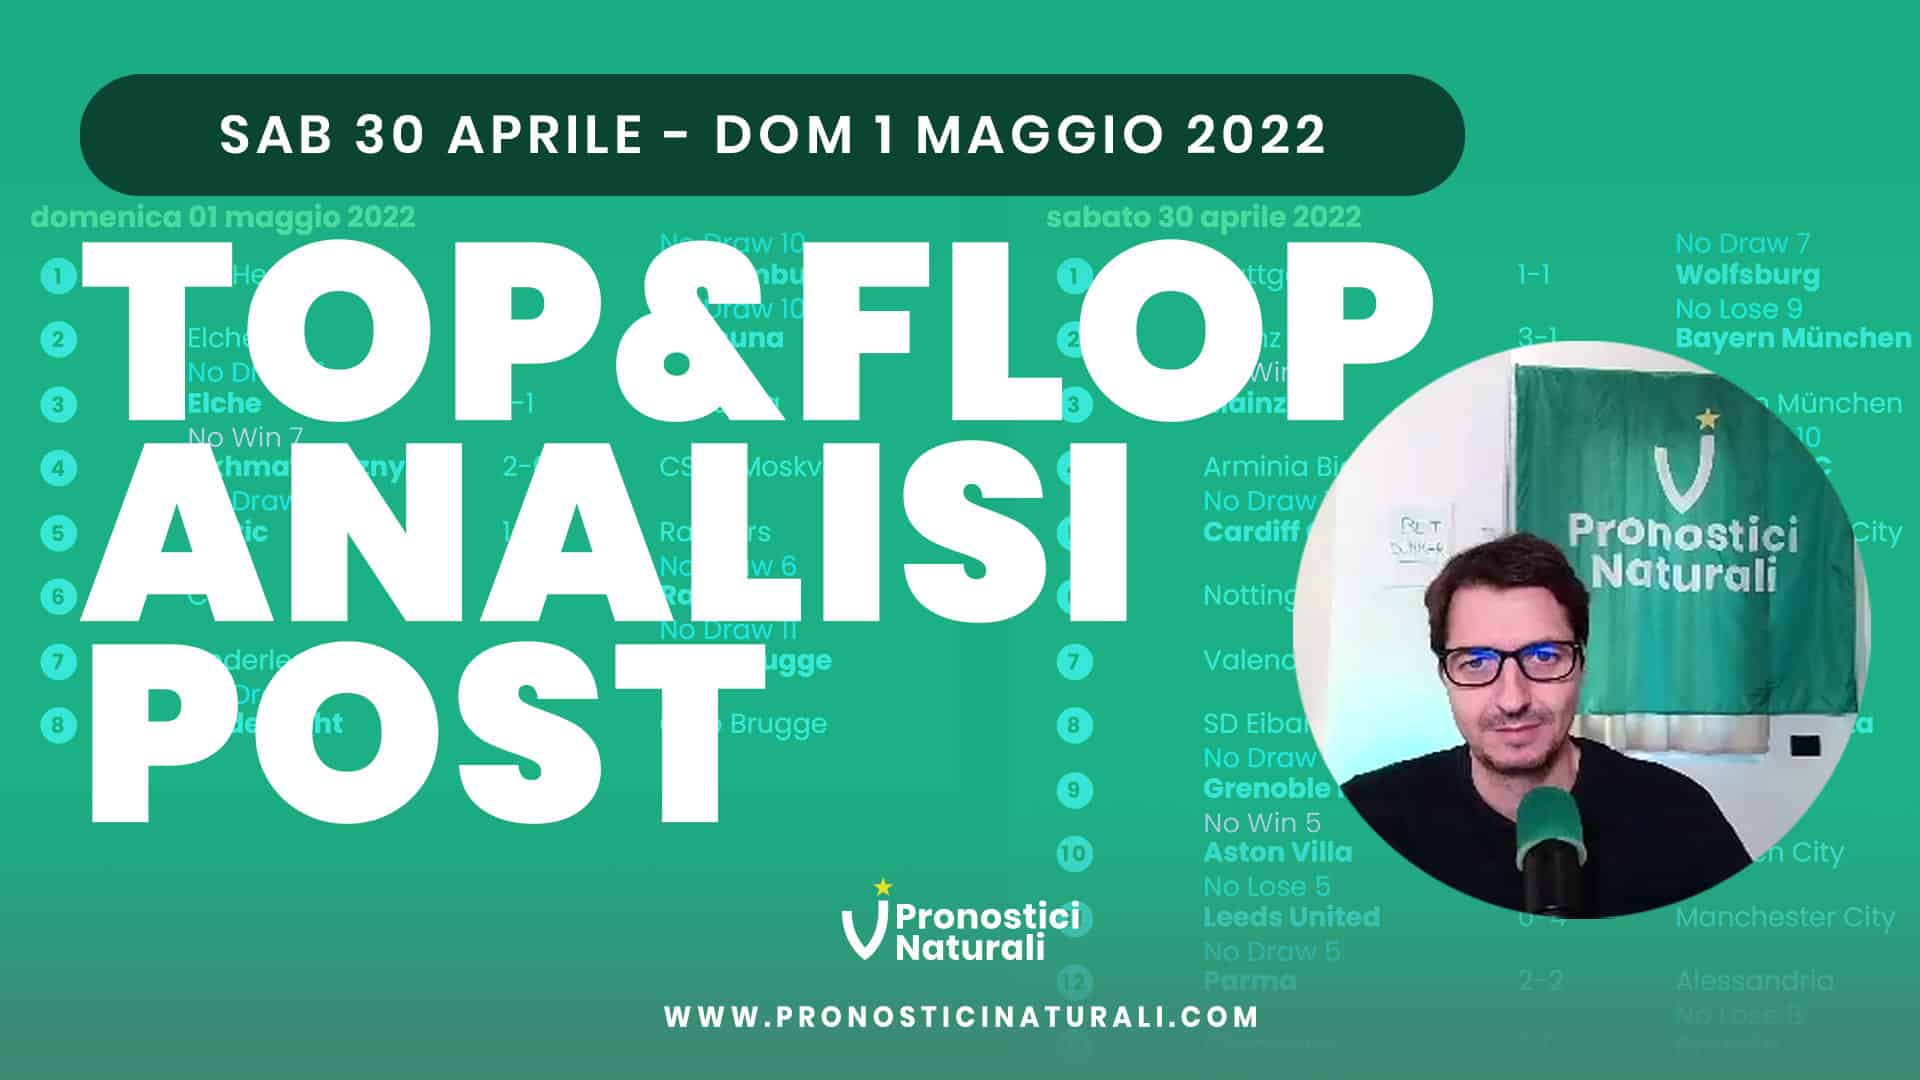 Pronostici Naturali Video Analisi Scommesse Betting Calcio Analisi Post Partite 30 Aprile 1 Maggio 2022